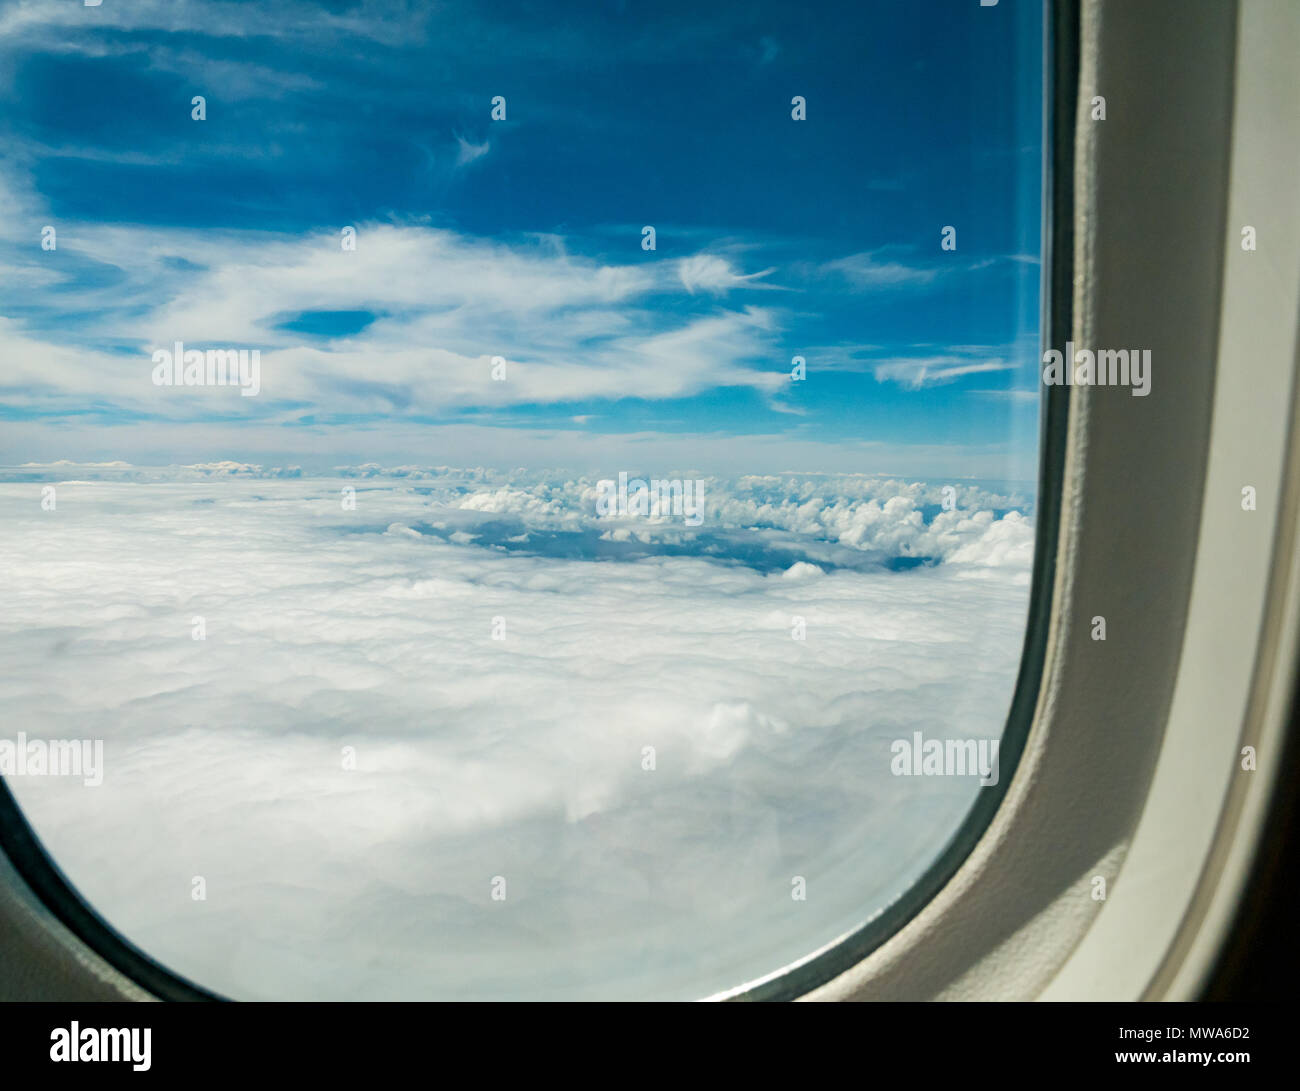 Vue du Dreamliner 787 LATAM airlines siège en classe affaires grâce à une fenêtre donnant sur l'océan Pacifique entre l'île de Pâques et le Chili Banque D'Images